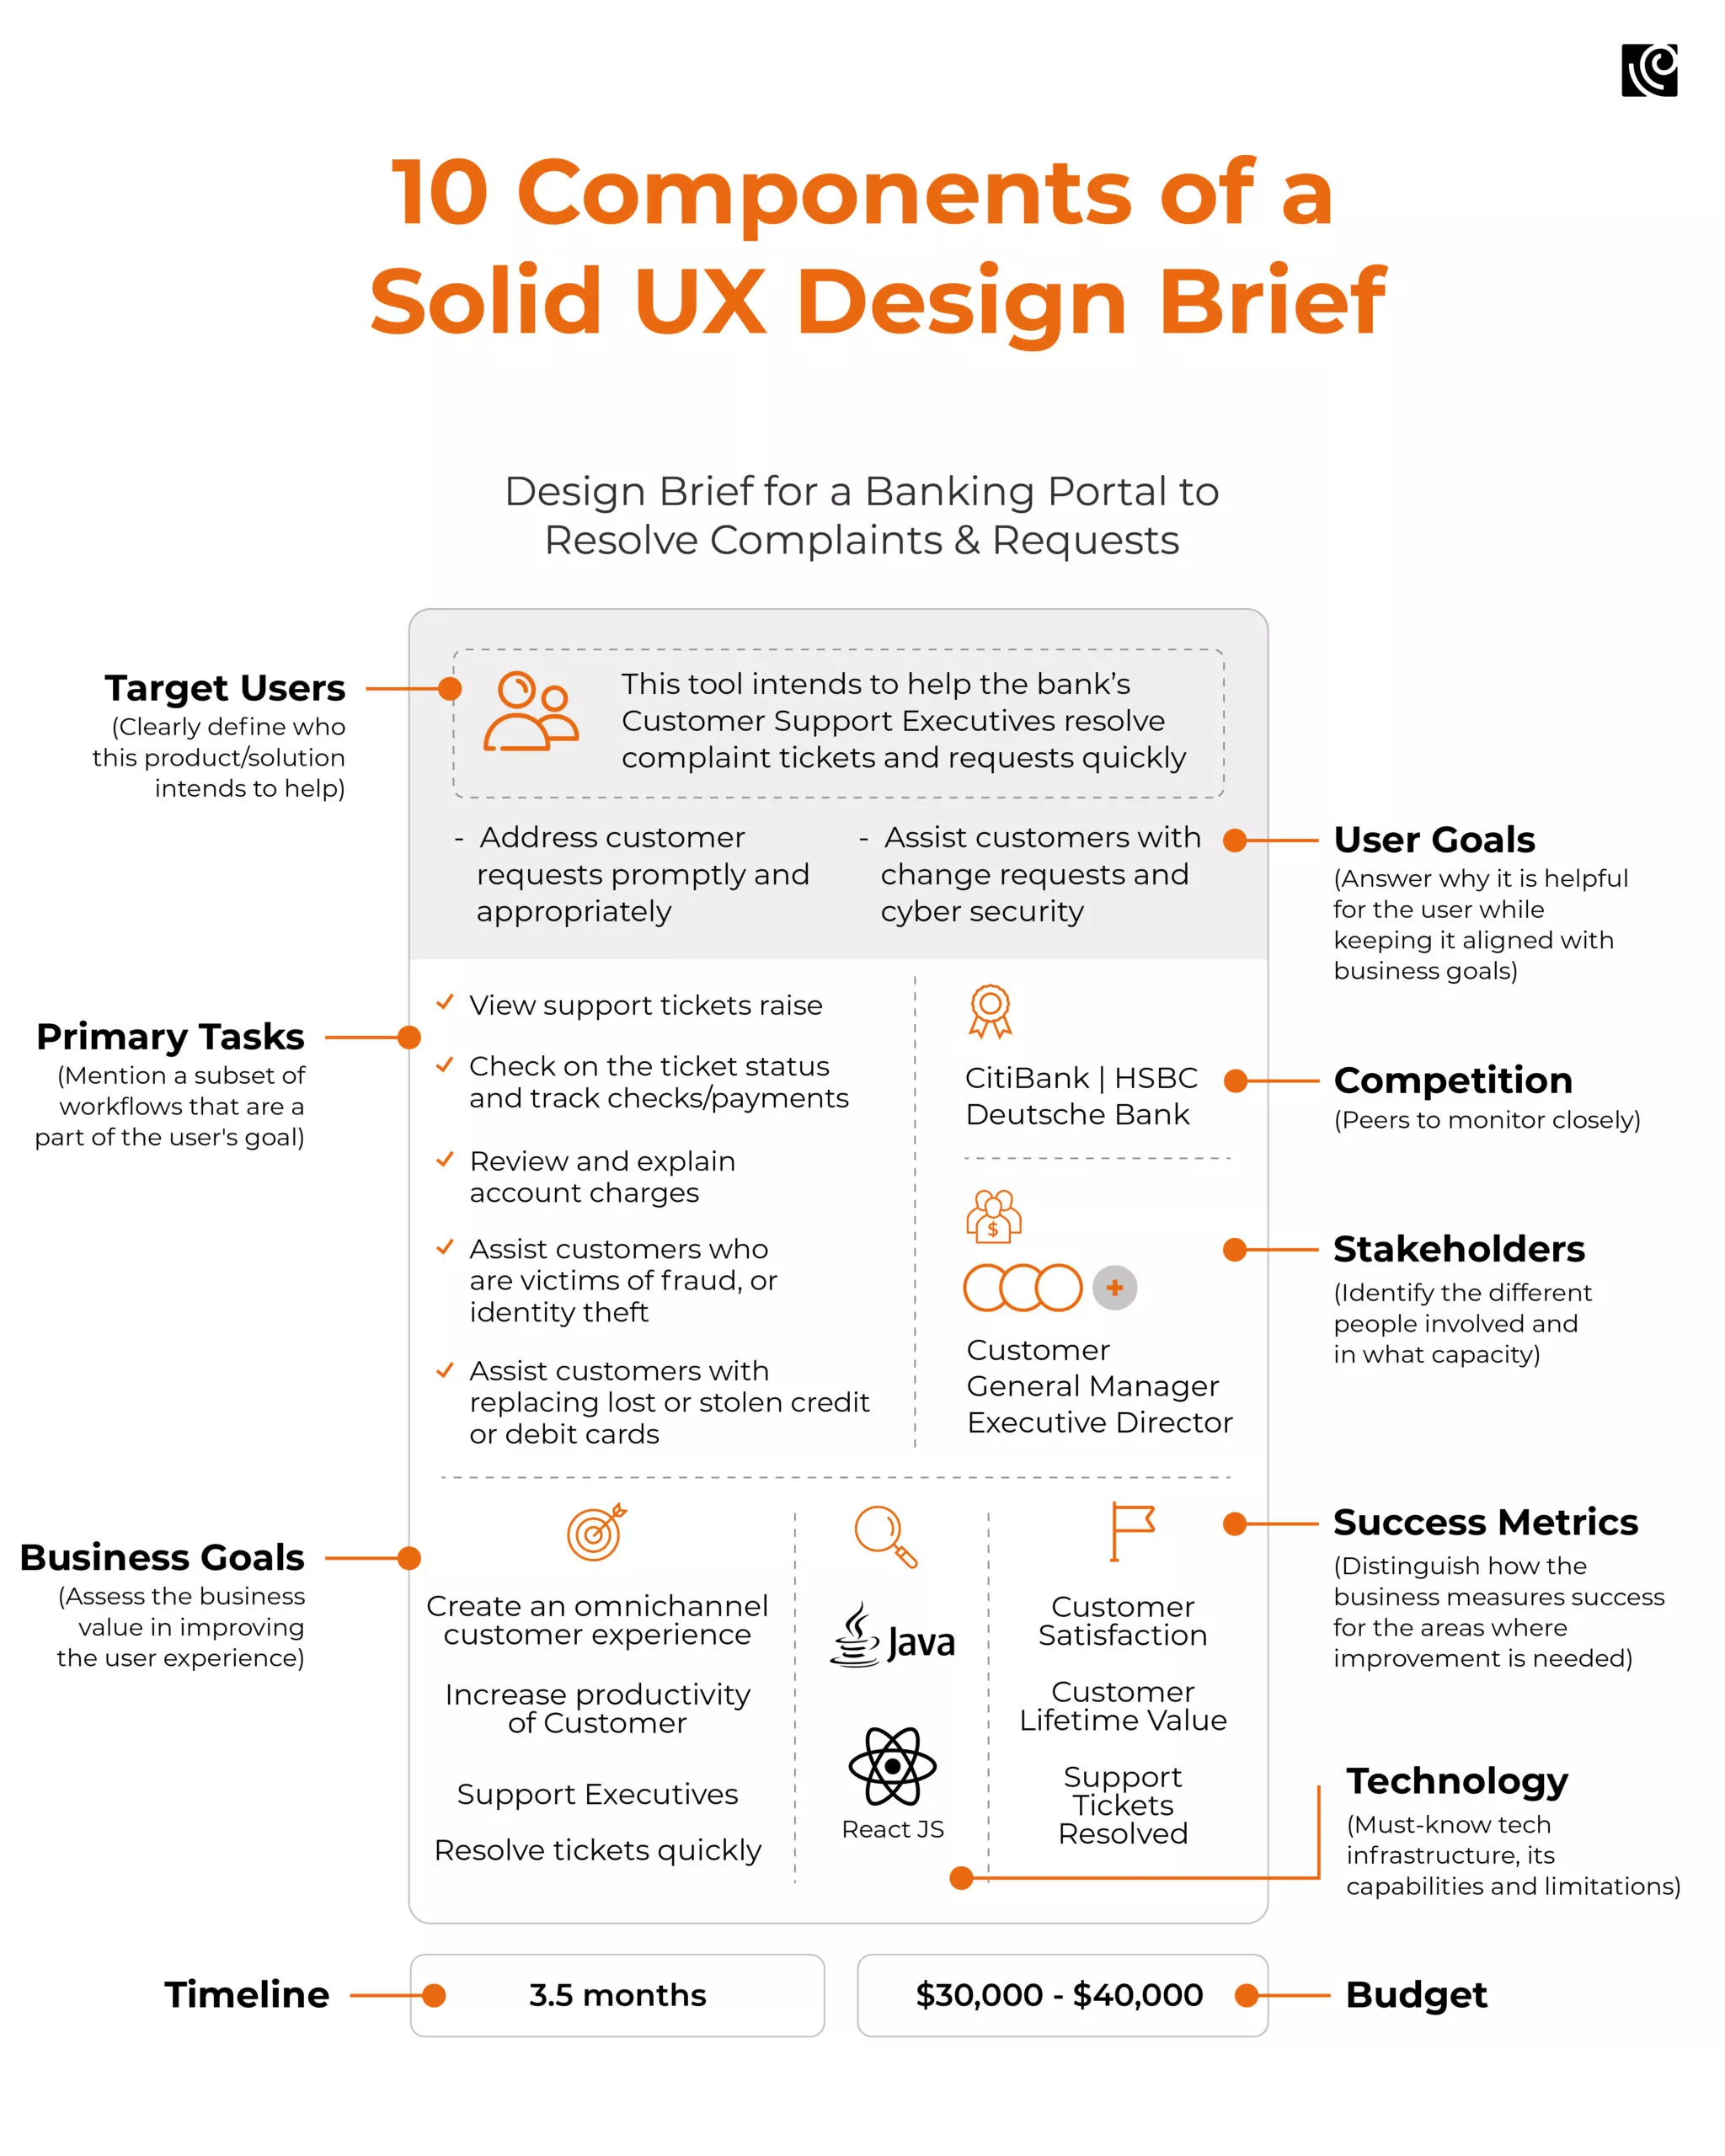 ux design brief